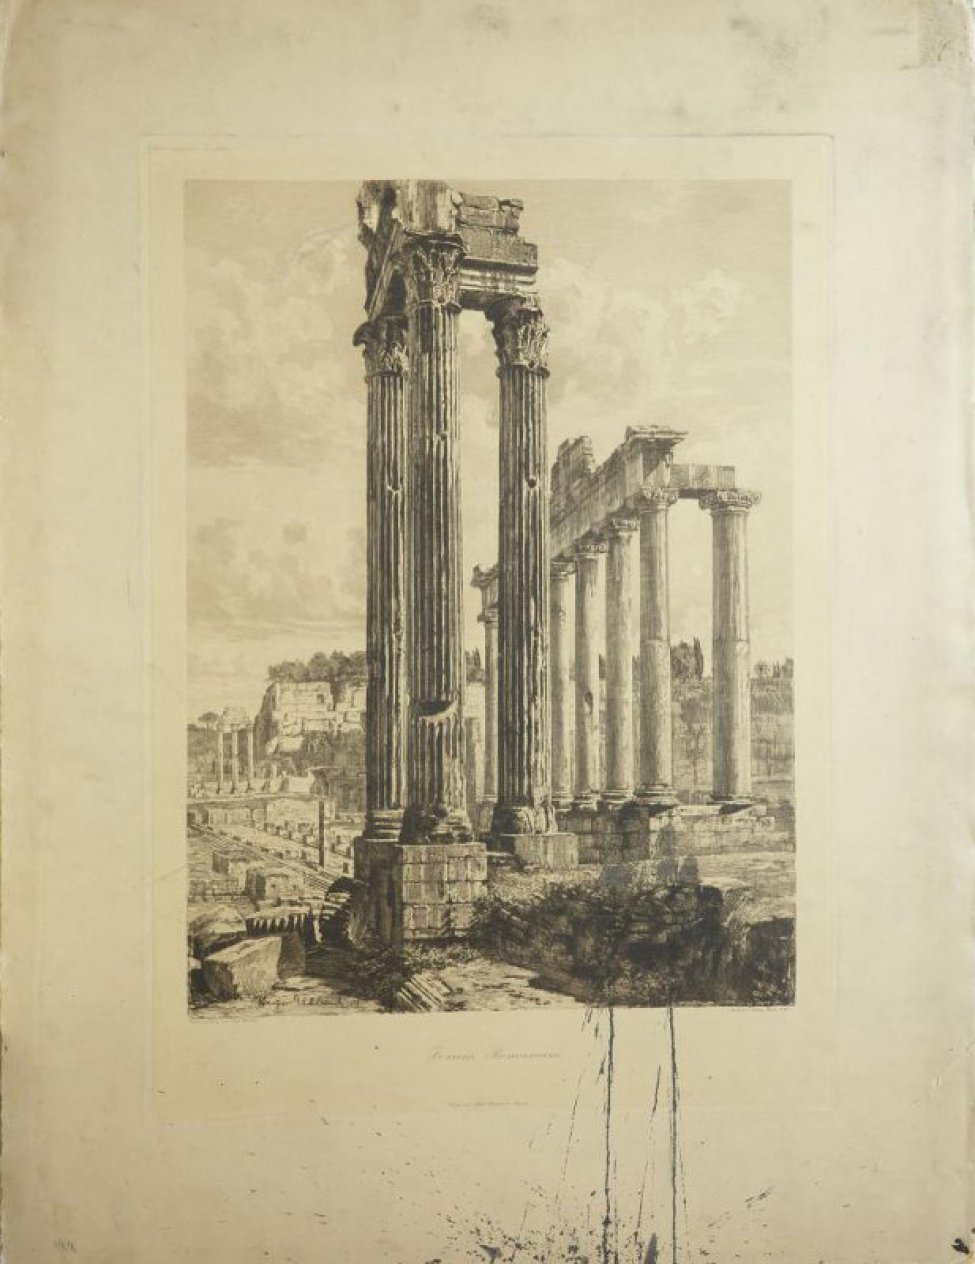 Гравюра изображает развалины римского форума. На первом плане три уцелевшие высокие колонны;  справа ряд колонн с антаблементом;  вдали также виднеются колонны и стены здания, поросшие наверху густою зеленью; везде разбросаны большие камни от построек.